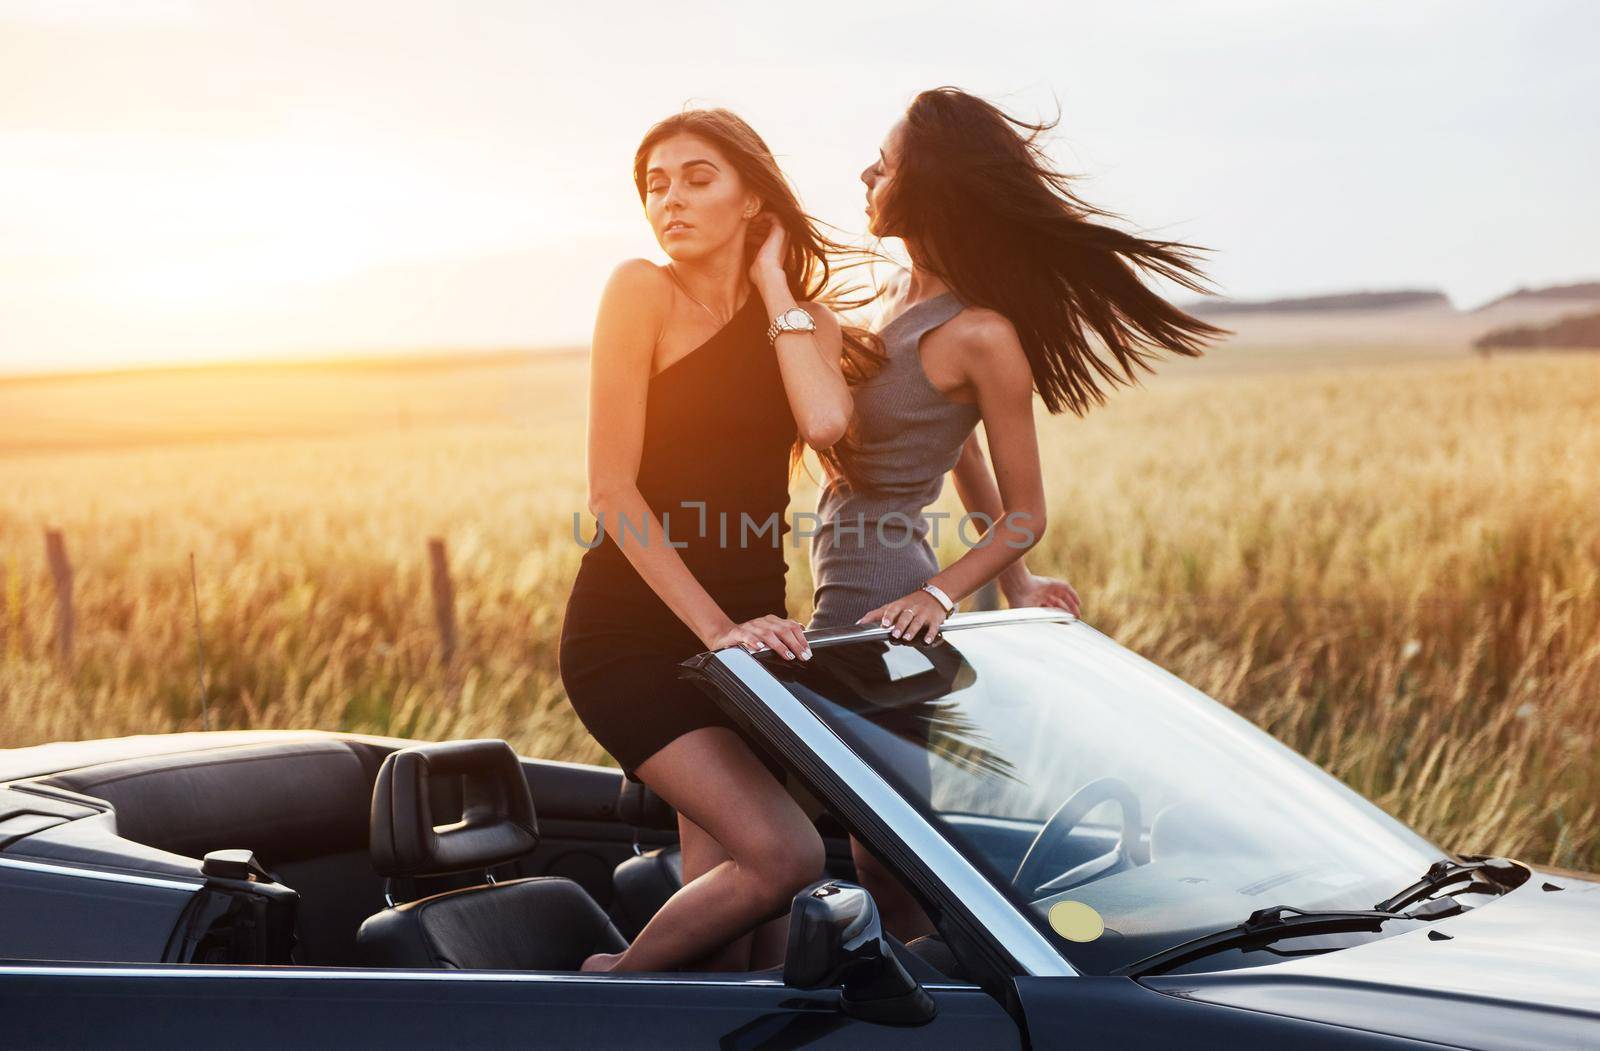 Two women in a black car on the roadside roads.